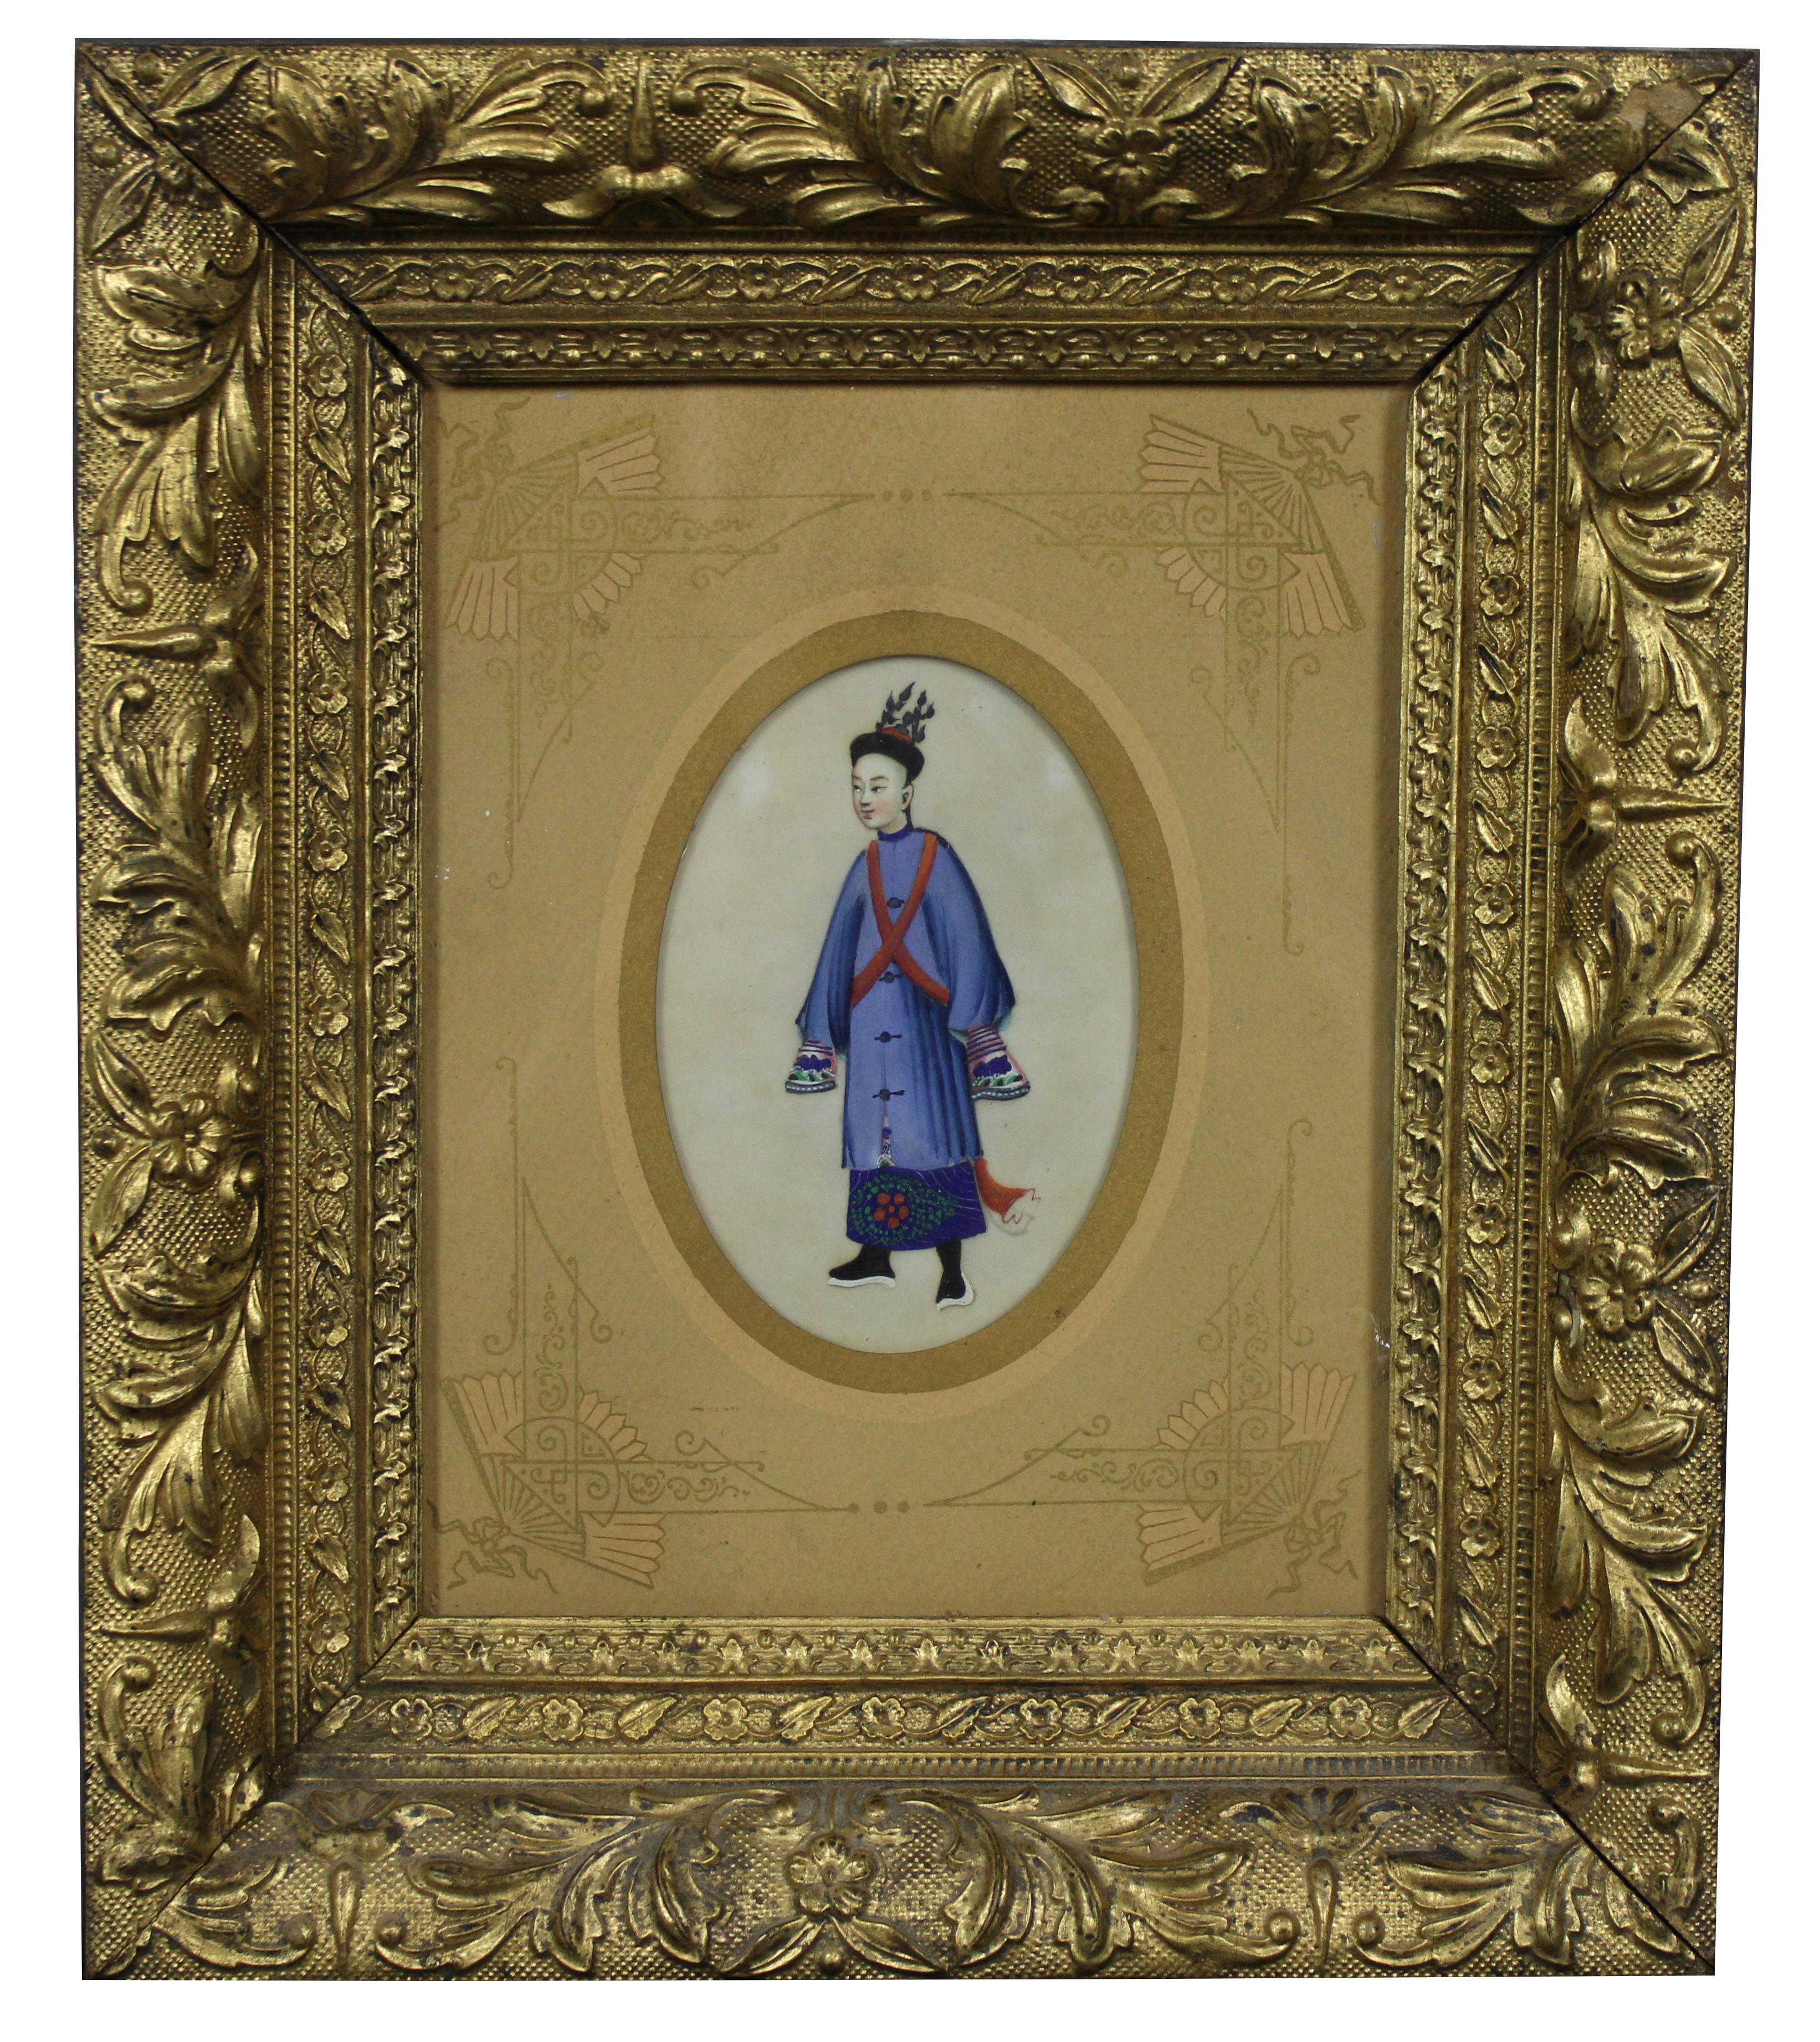 Antike chinesische Export-Reispapier-Pitch-Aquarellgemälde. Mit einem Mann und einer Frau in blauen Gewändern; gerahmt in tief abgeschrägten floralen Rahmen aus vergoldetem Holz, Ästhetizismus.

Maße: 12,5 x 2,25 x 14,5 / Sans Rahmen - 3,5 x 5,5